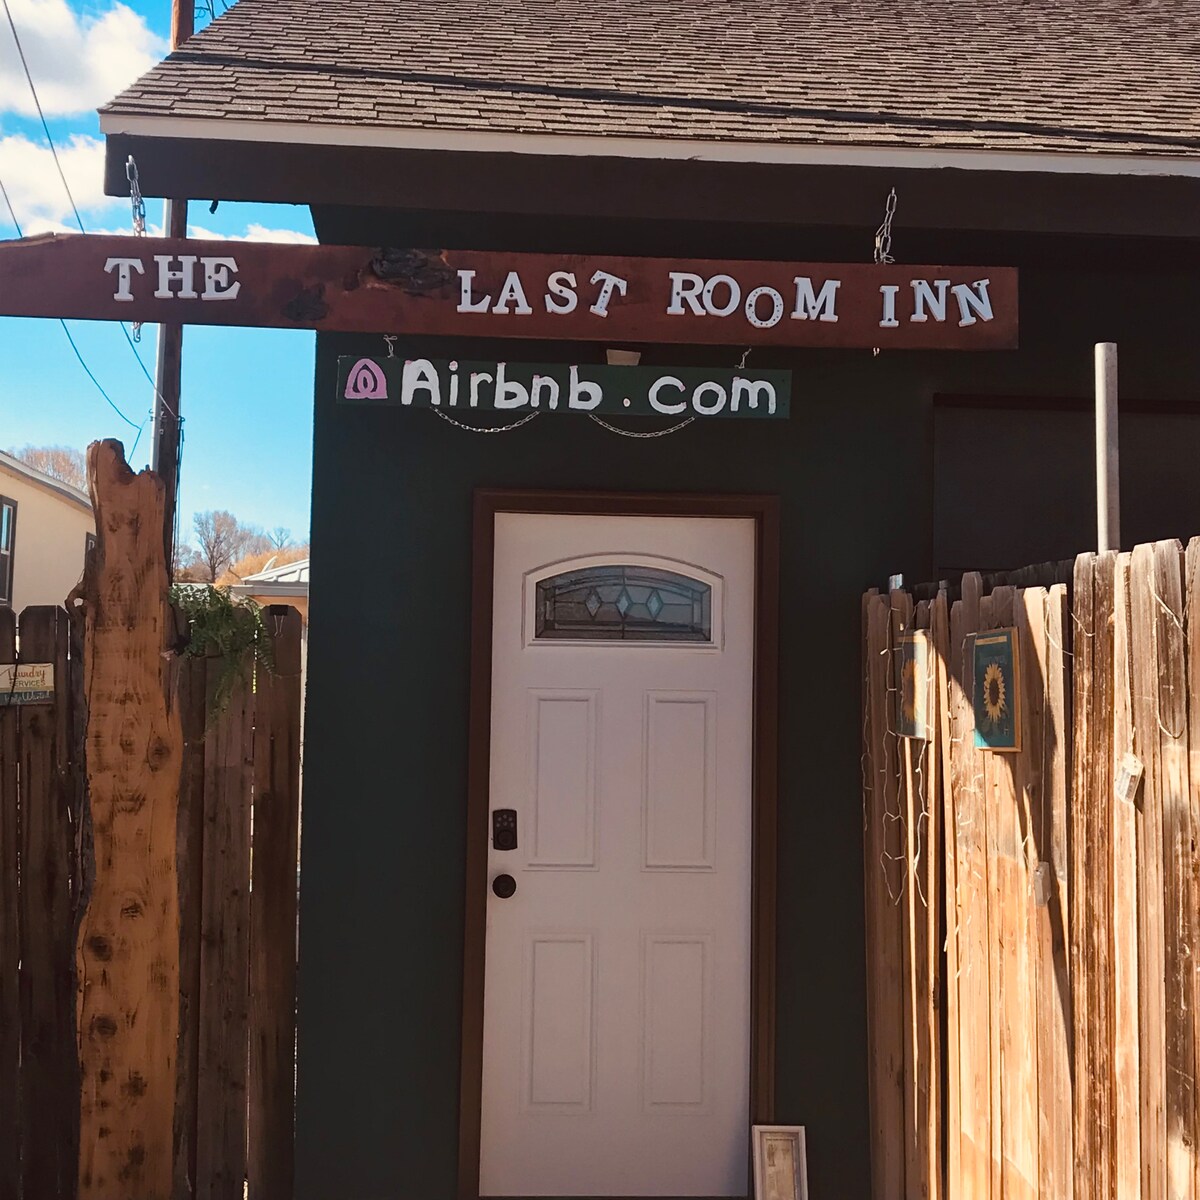 The Last Room Inn